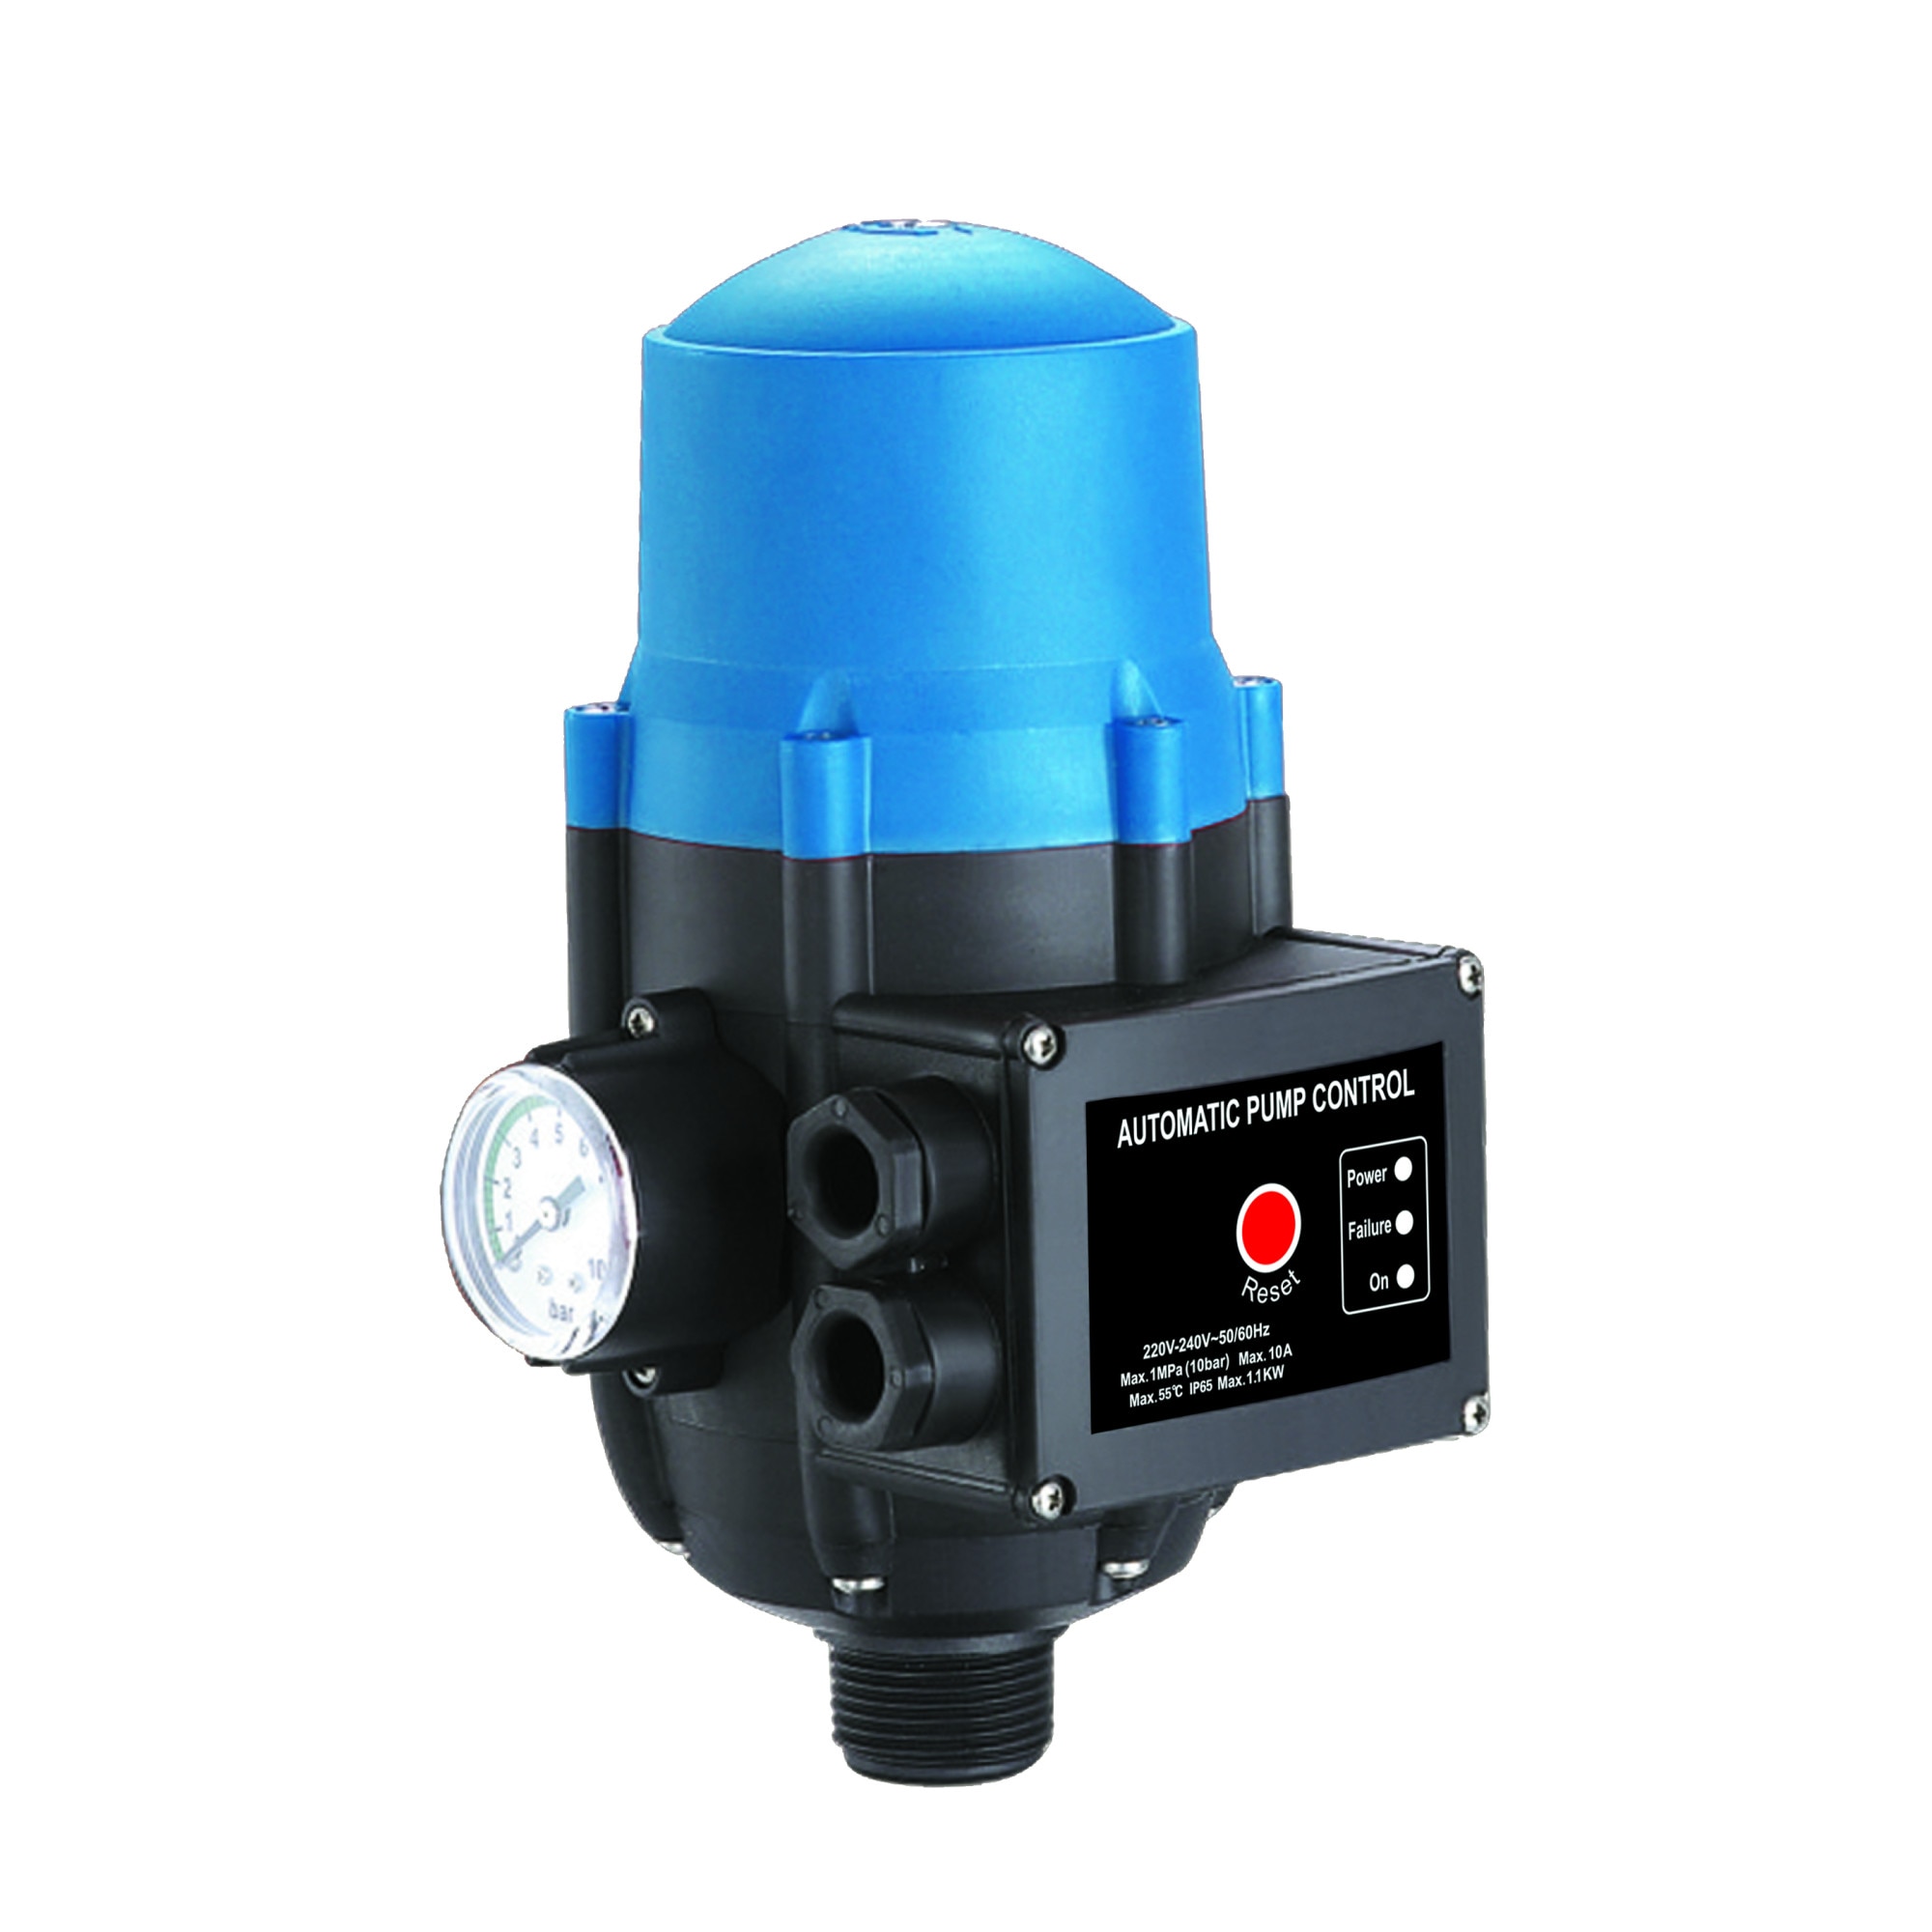 Защита давления воды. 58001 - Пресс контроль для водяного насоса - EPC-1. Регулятор давления электронный 10 бар. Регулятор давления для воды Prorab EPC-1. Реле давления Presscontrol.